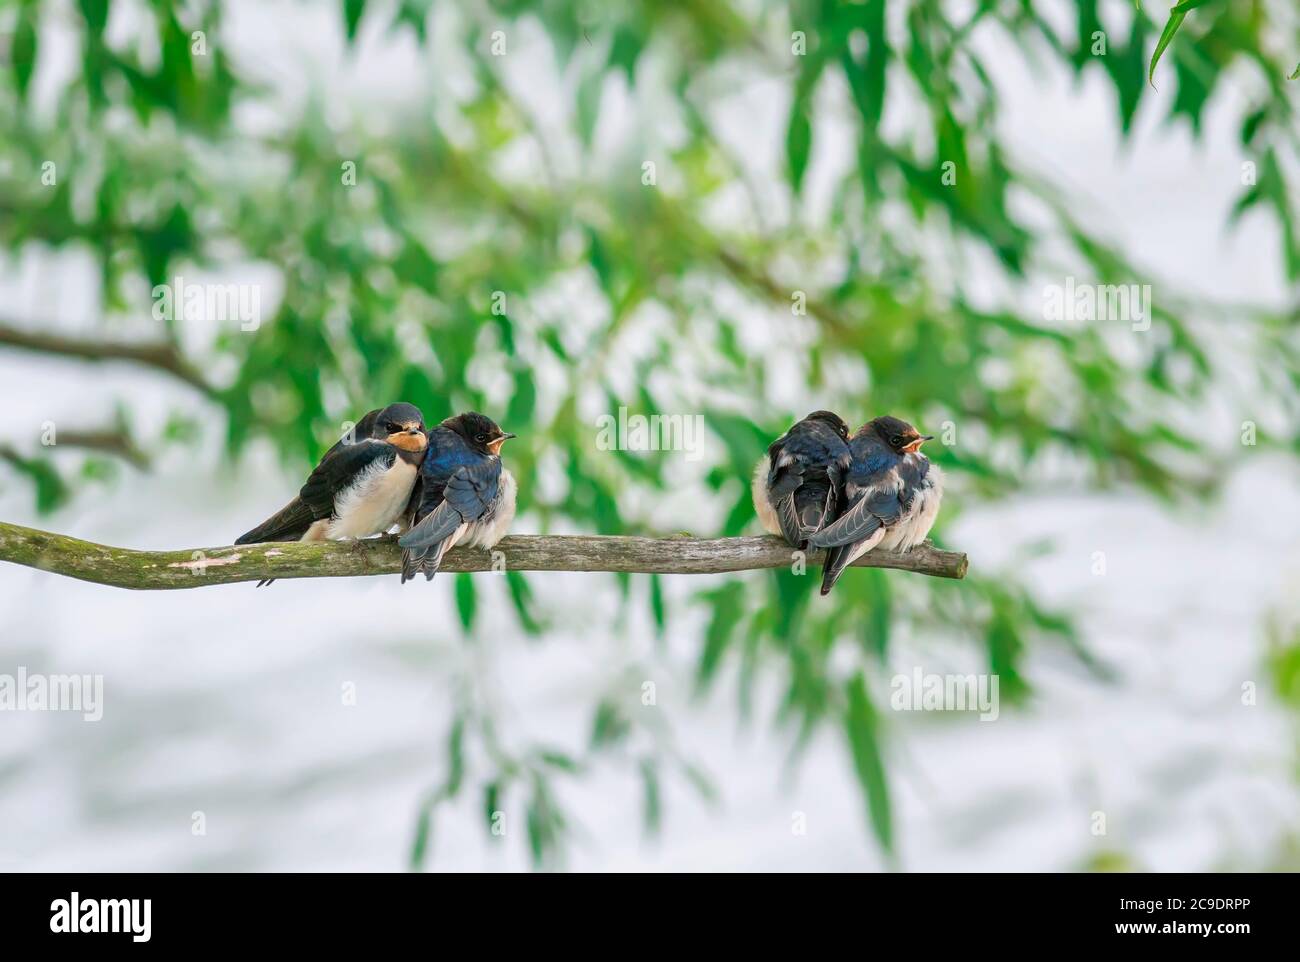 Arrière-plan naturel avec de petits jeunes oiseaux village swhirondelles s'asseoir sur une branche au-dessus d'un étang lors d'une Sunny jour d'été Banque D'Images